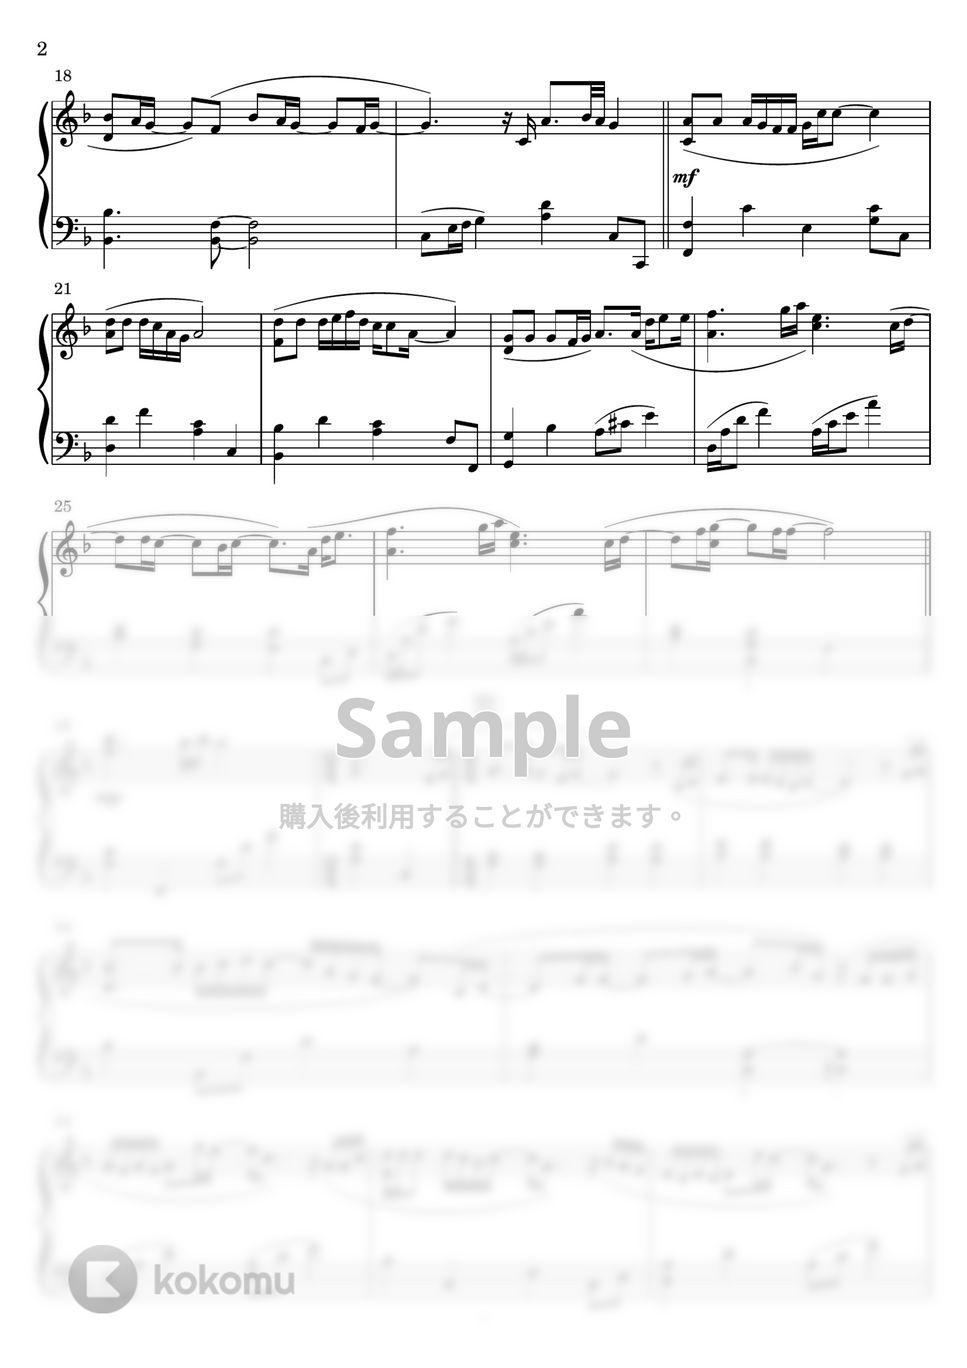 菅田将暉/STAND BY ME ドラえもん2 - 虹 (ピアノソロ) by Miz